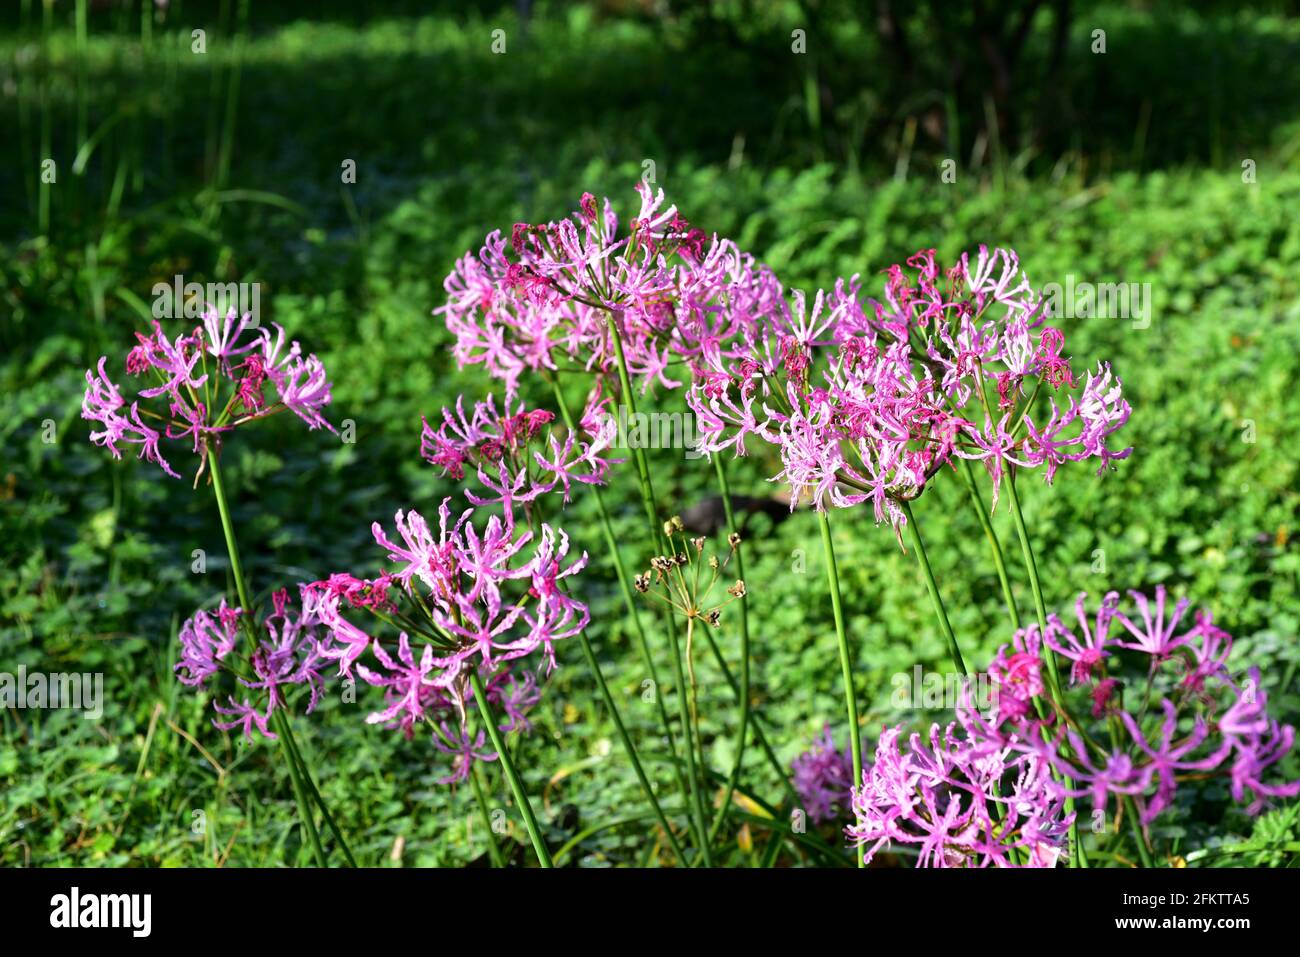 Nerine undulata ist eine bauchige Staudenpflanze, die im südlichen Afrika beheimatet ist. Stockfoto